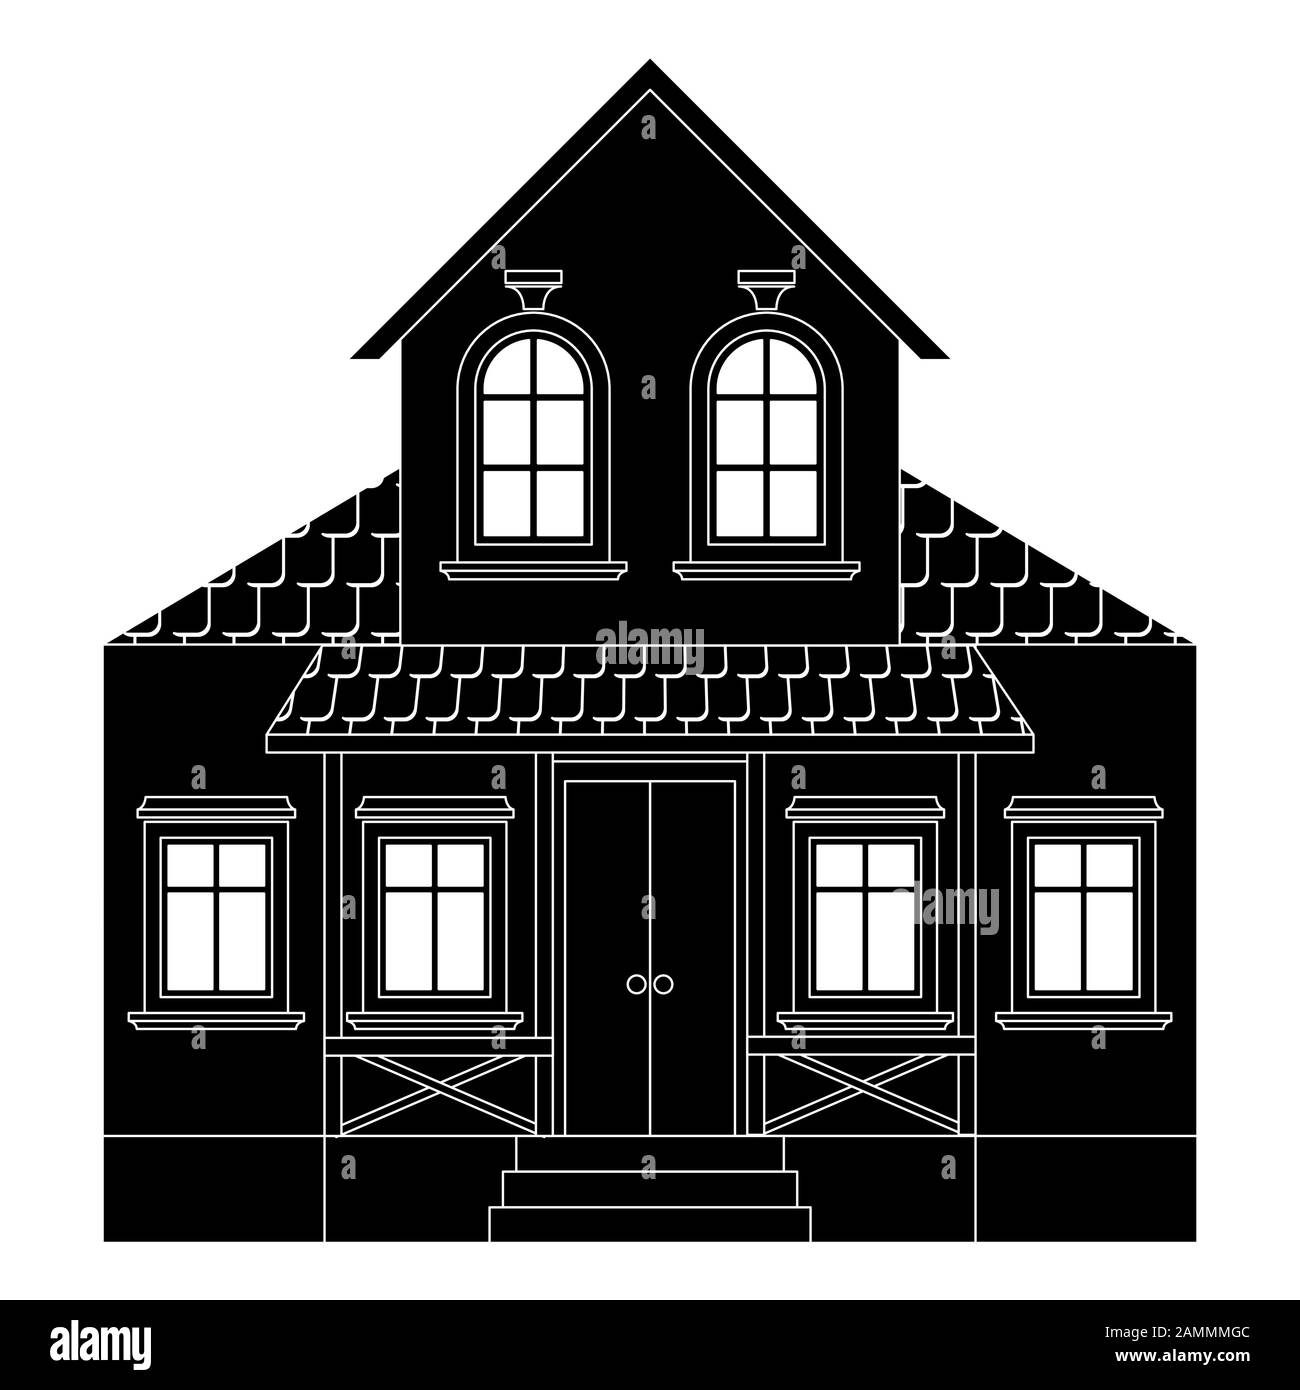 Haus. Zweistöckiges Wohnhaus mit Vorhalle. Schwarze Umrisszeichnung Stock Vektor